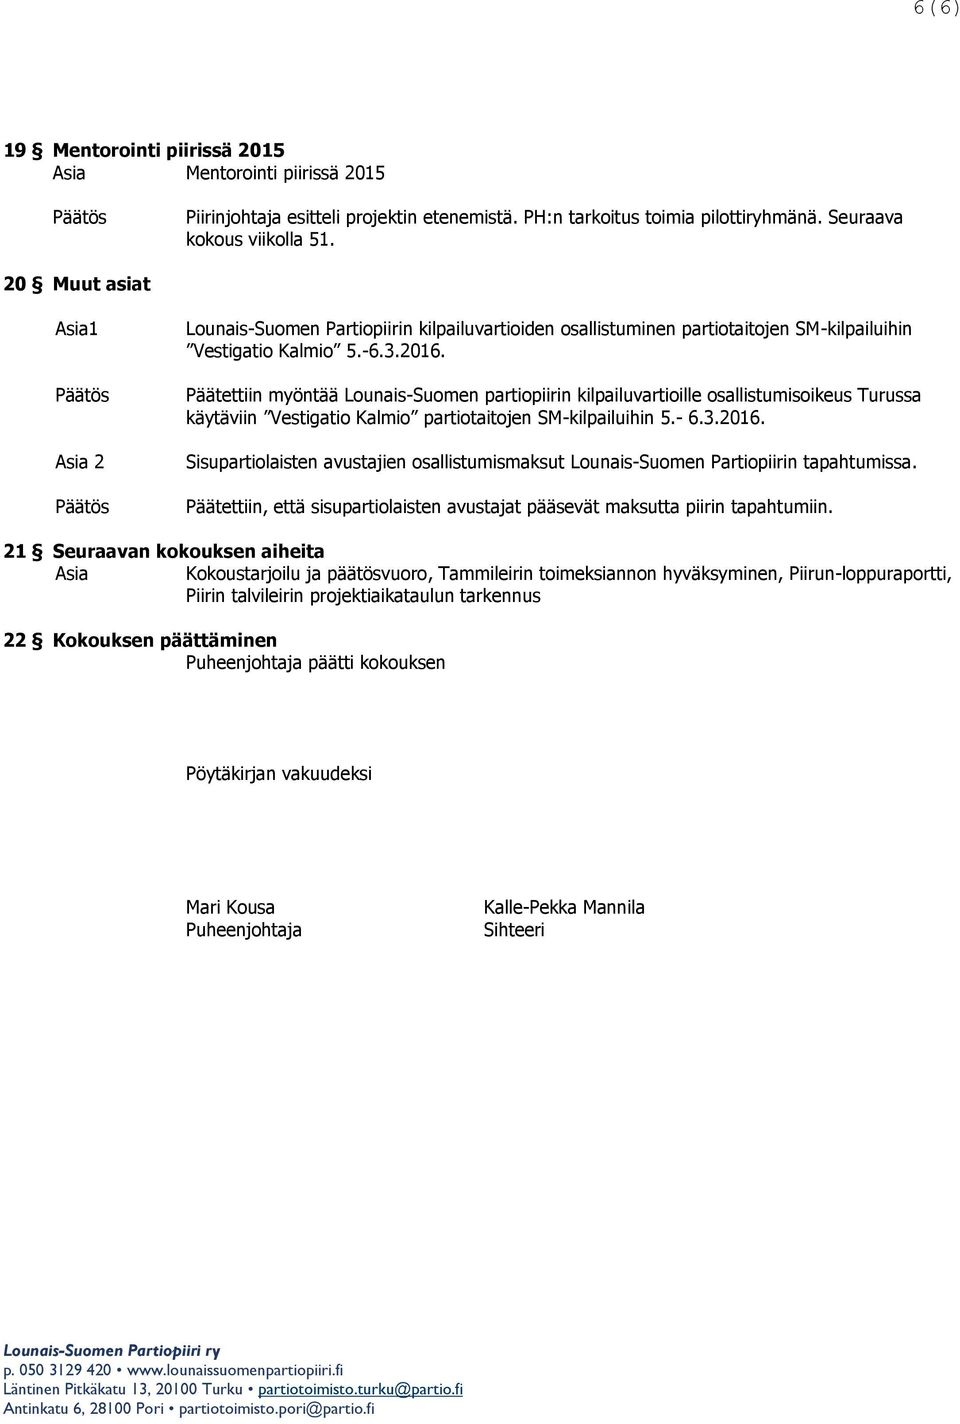 Päätettiin myöntää Lounais-Suomen partiopiirin kilpailuvartioille osallistumisoikeus Turussa käytäviin Vestigatio Kalmio partiotaitojen SM-kilpailuihin 5.- 6.3.2016.